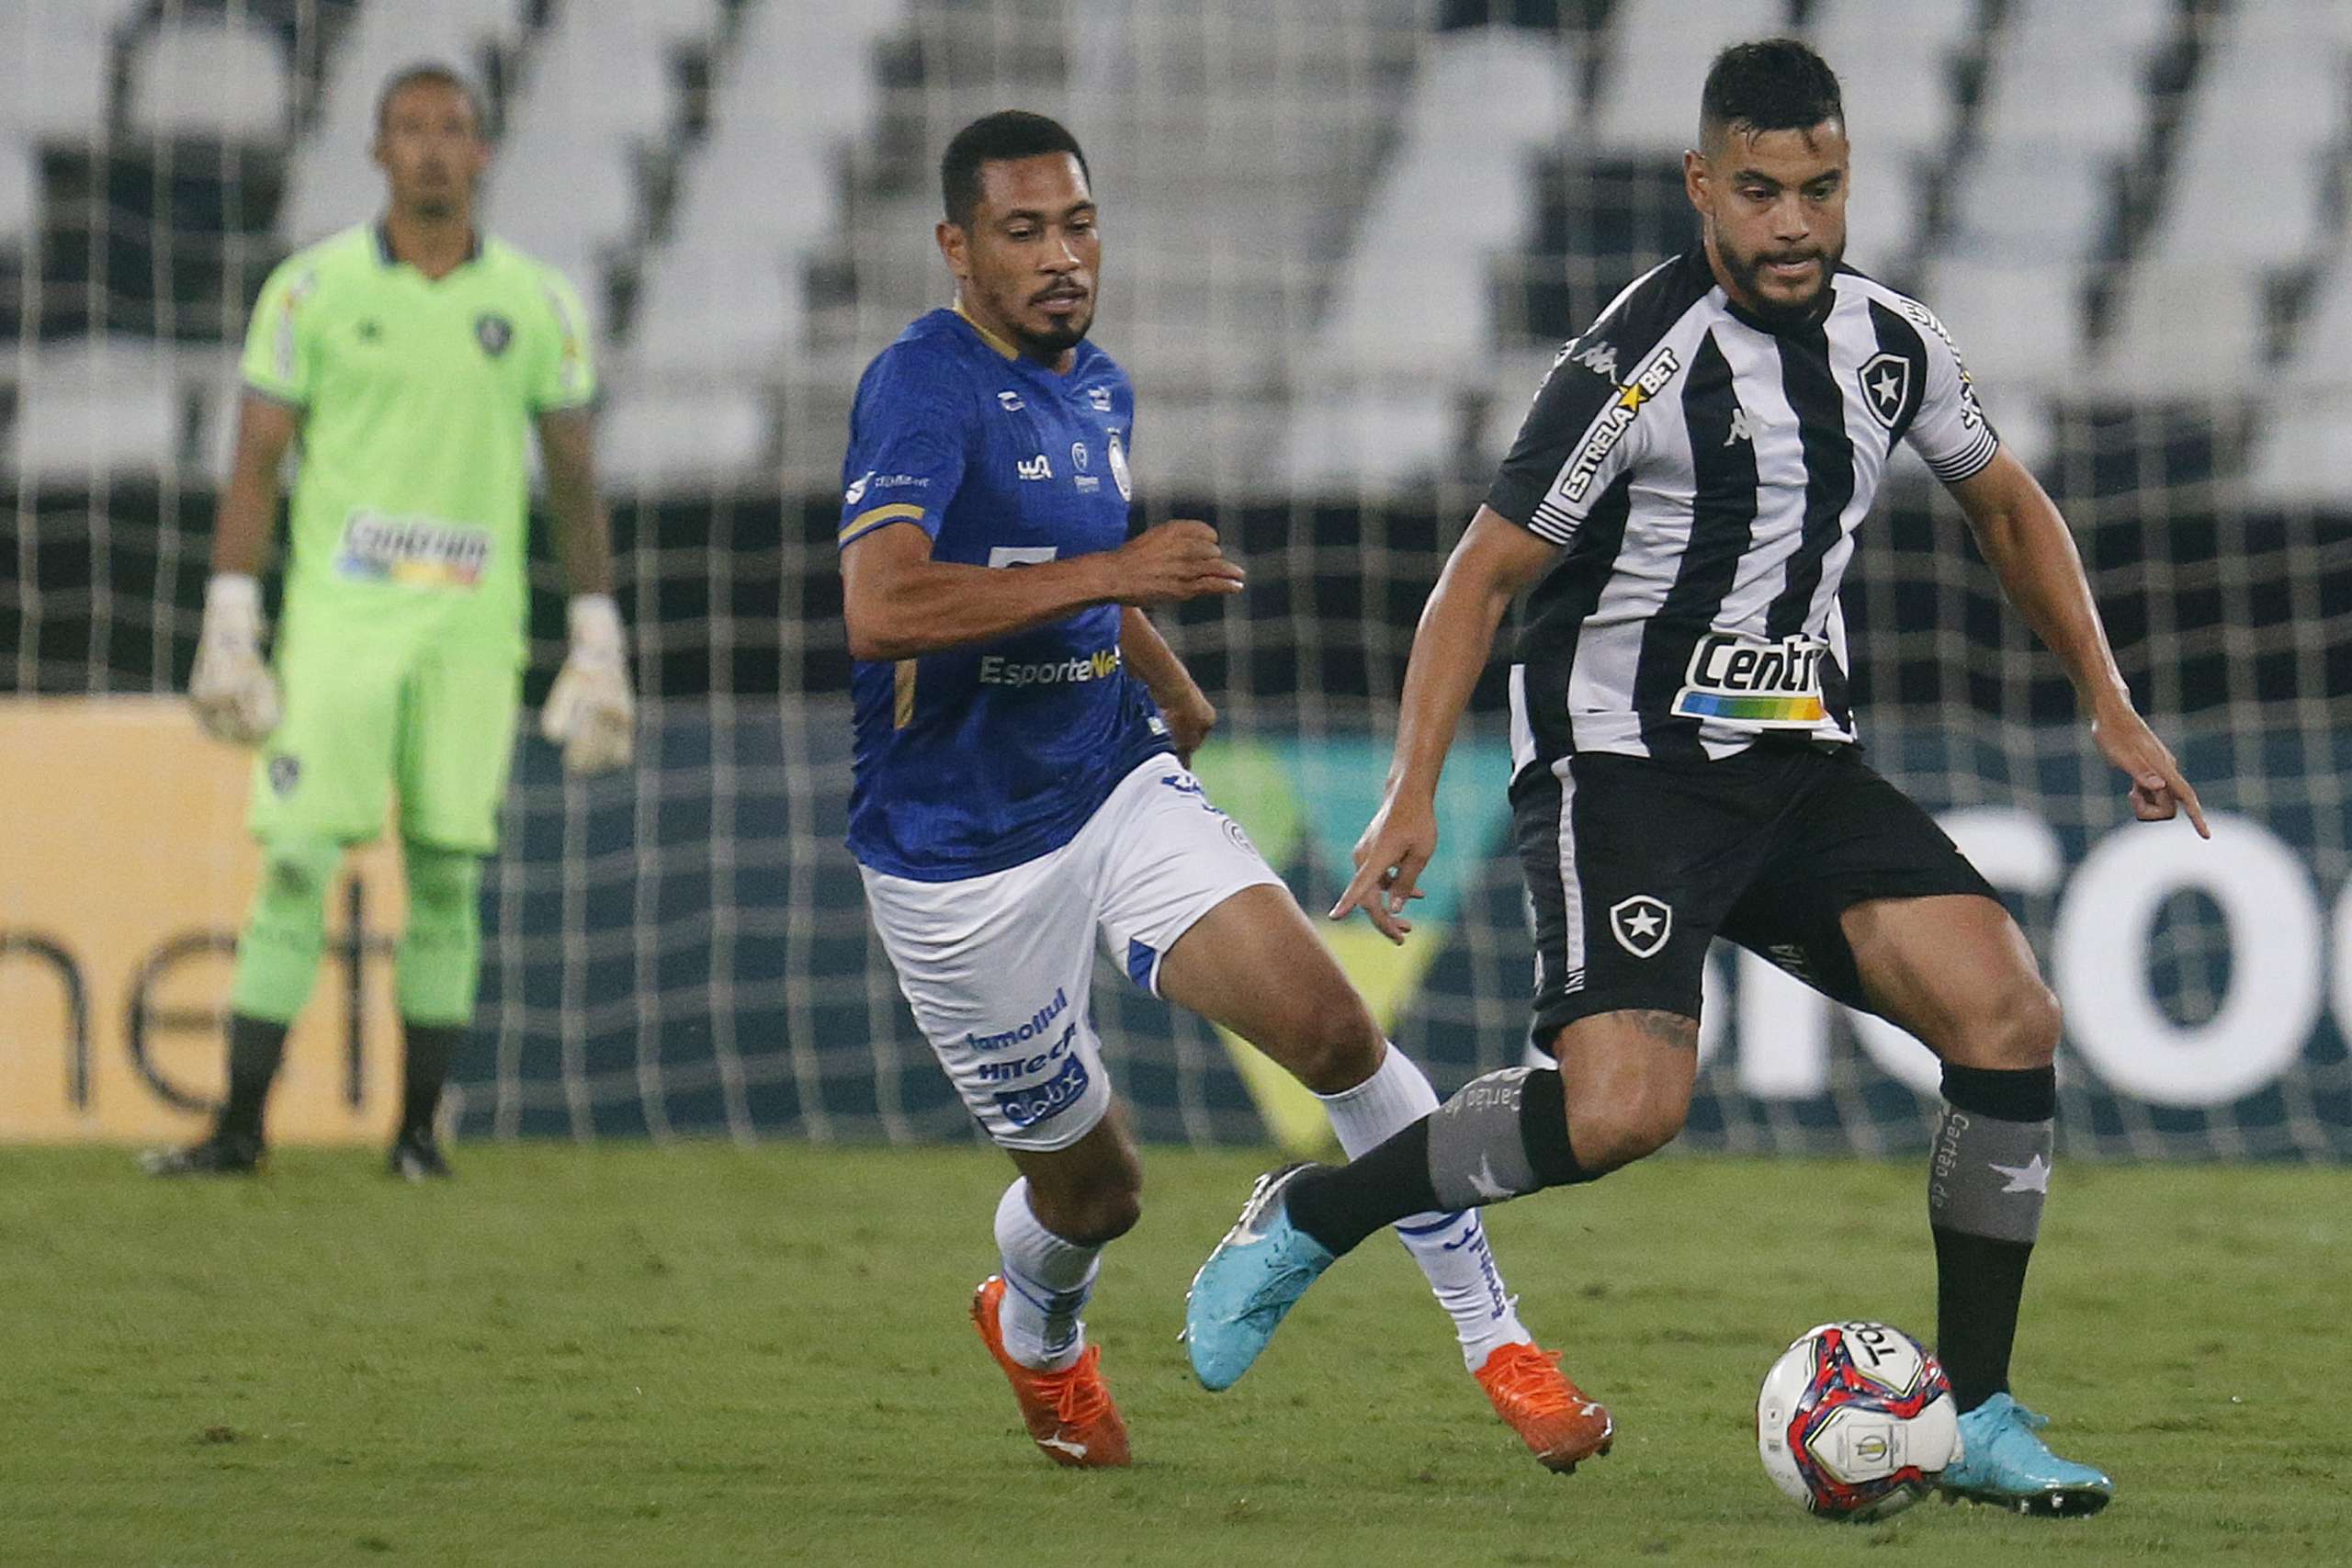 Botafogo confianca 1 scaled